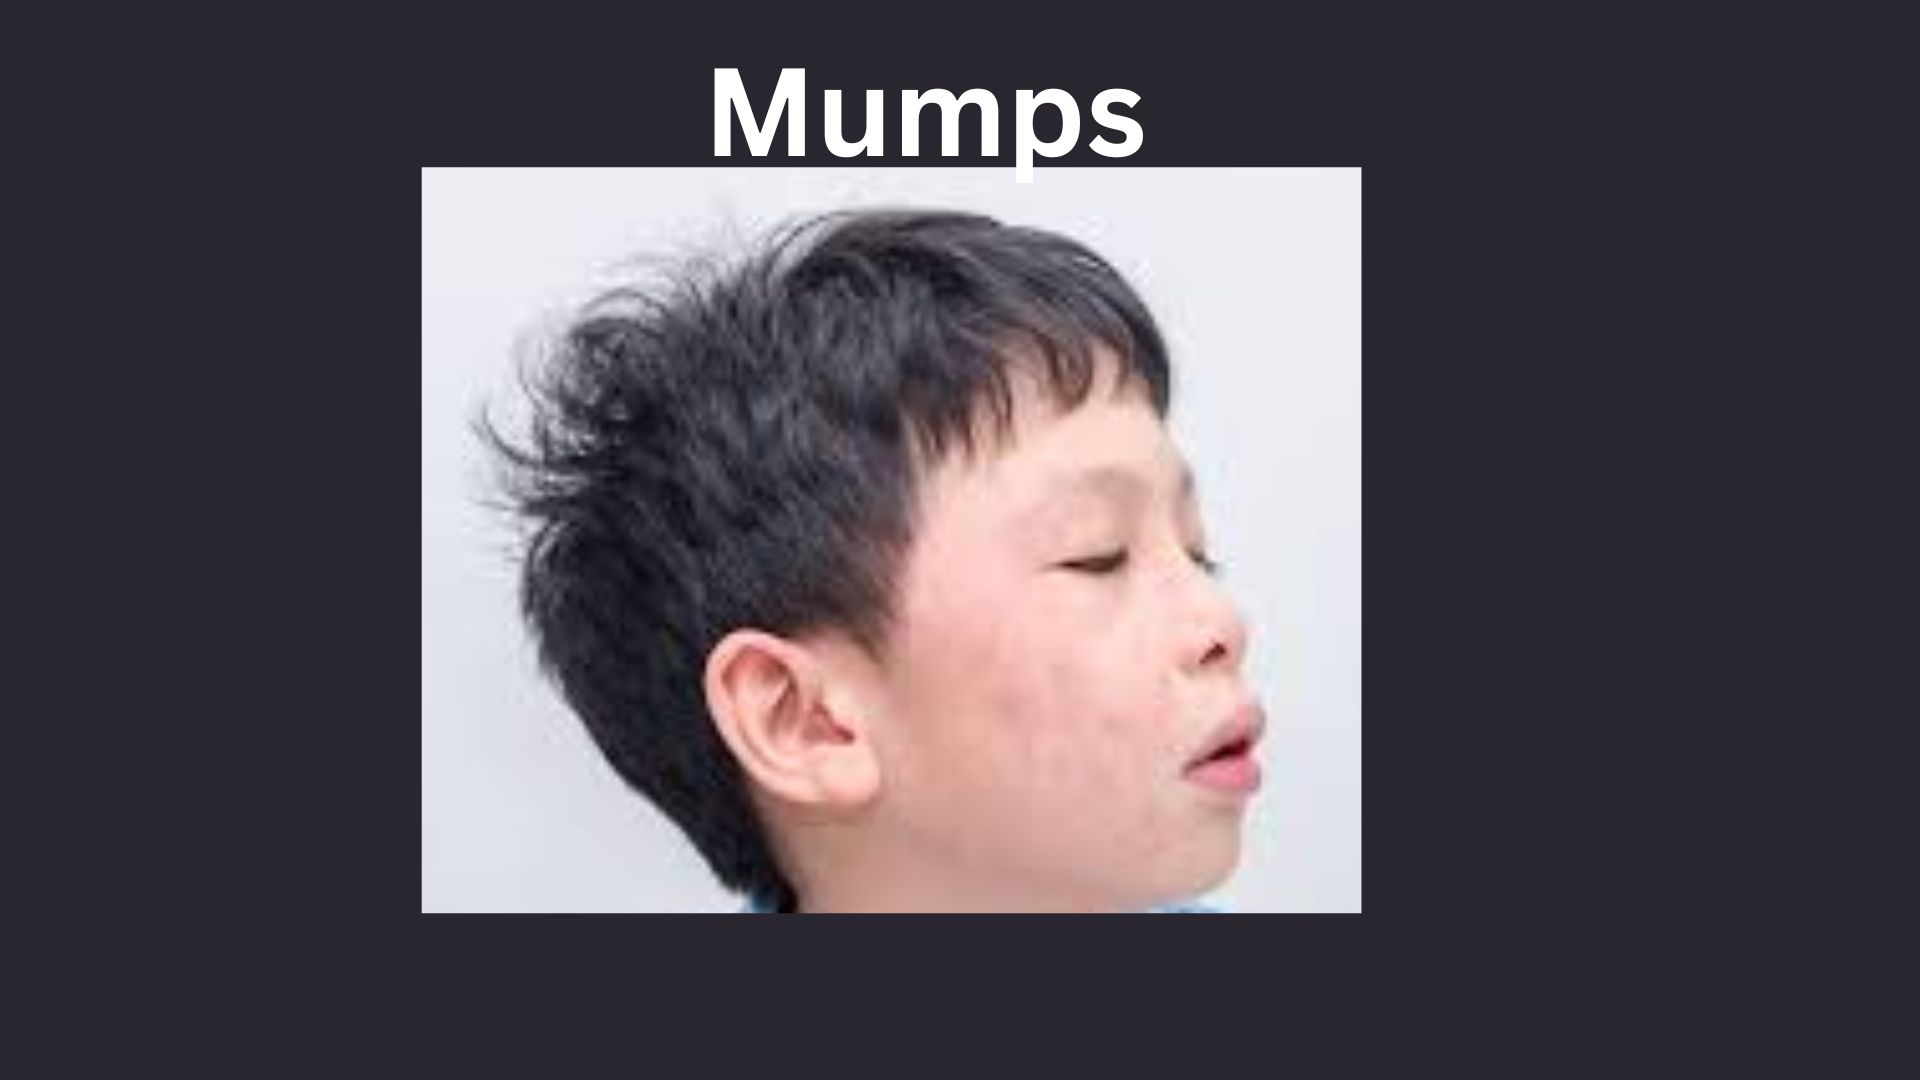 Mumps outbreak in Kerala